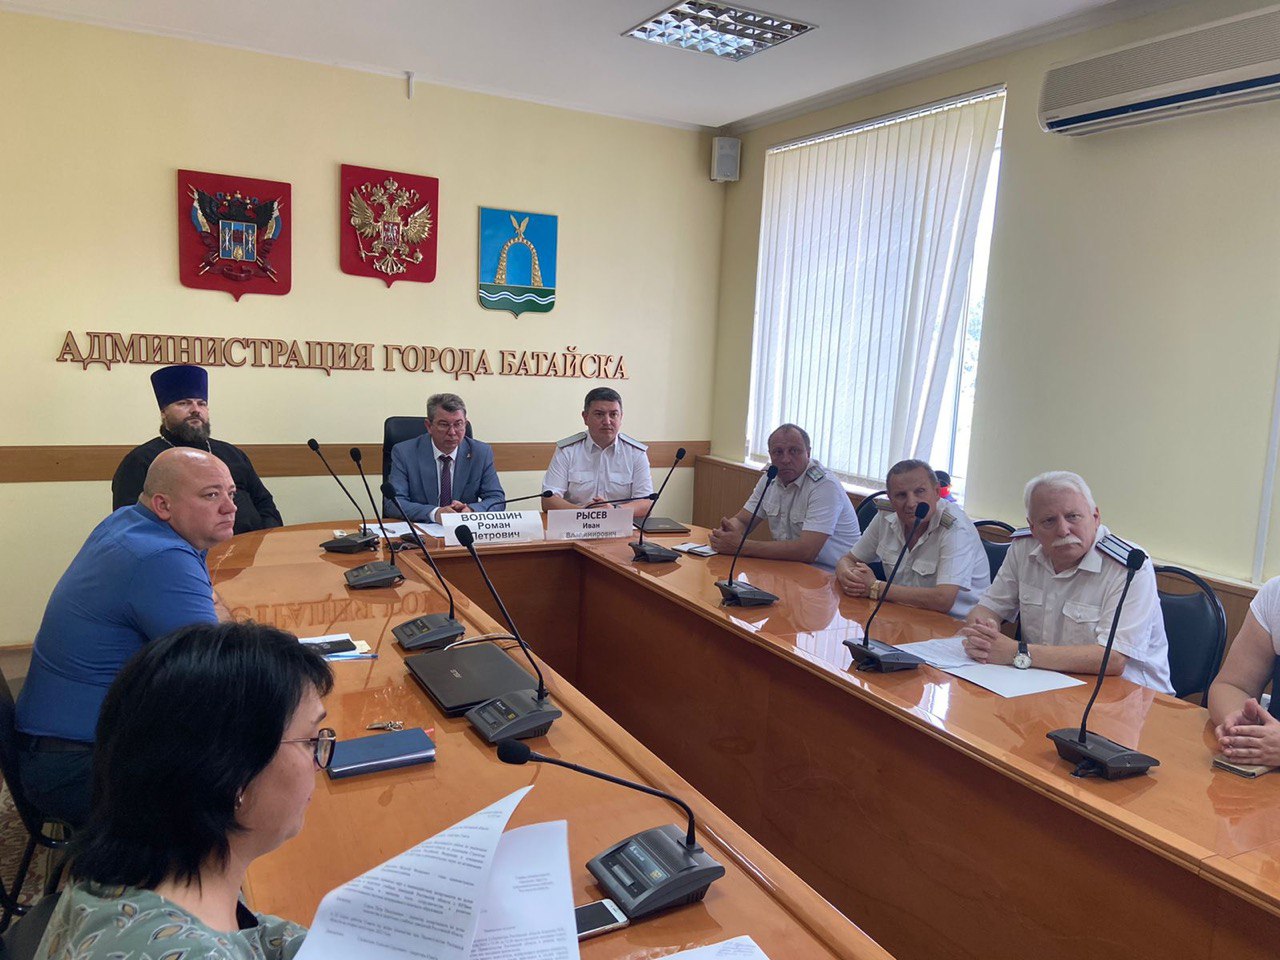 Сегодня прошло заседание Совета по делам казачества при Правительстве Ростовской области